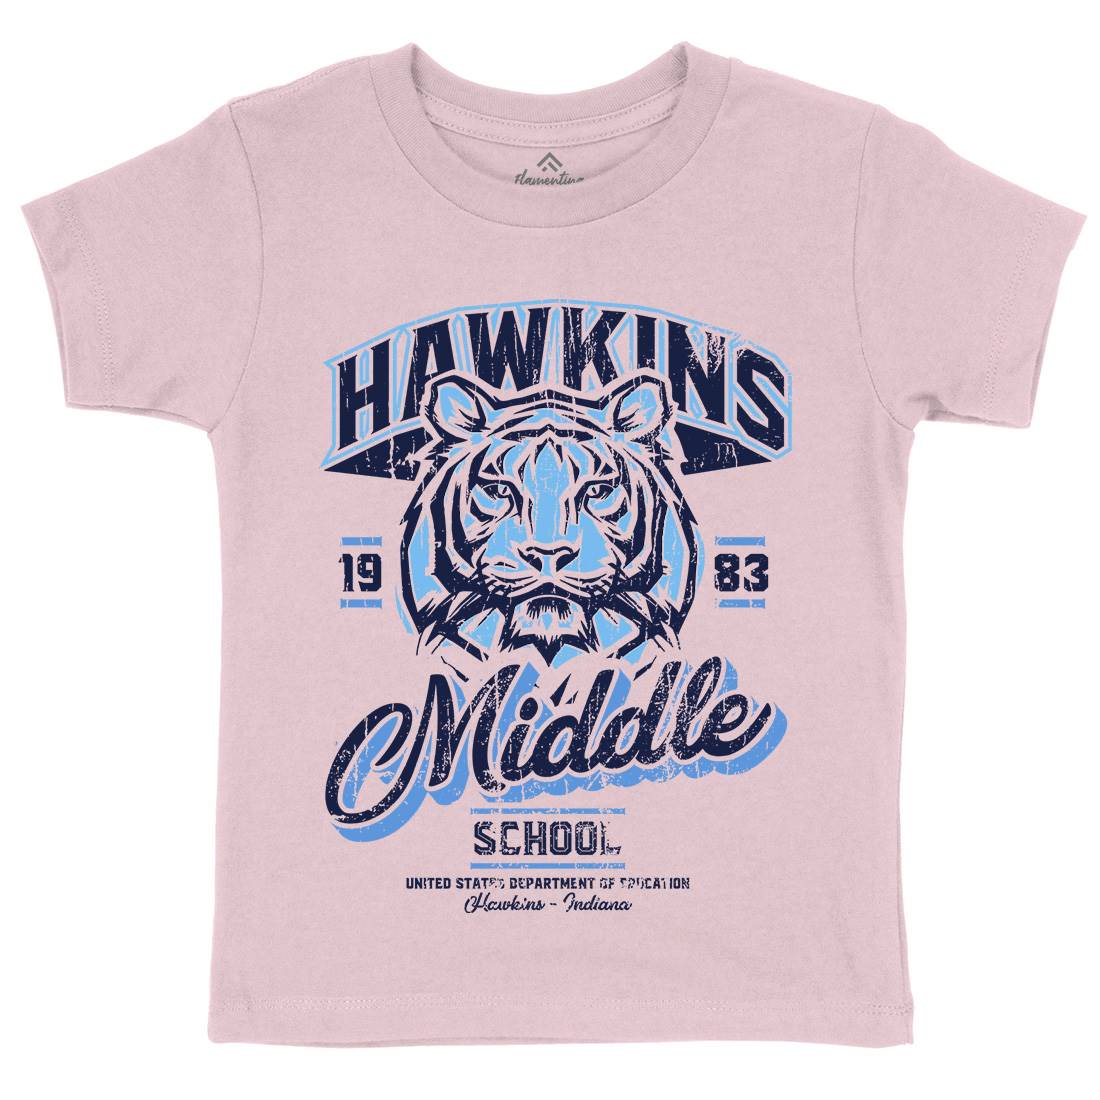 Hawkins School Kids Crew Neck T-Shirt Horror D144